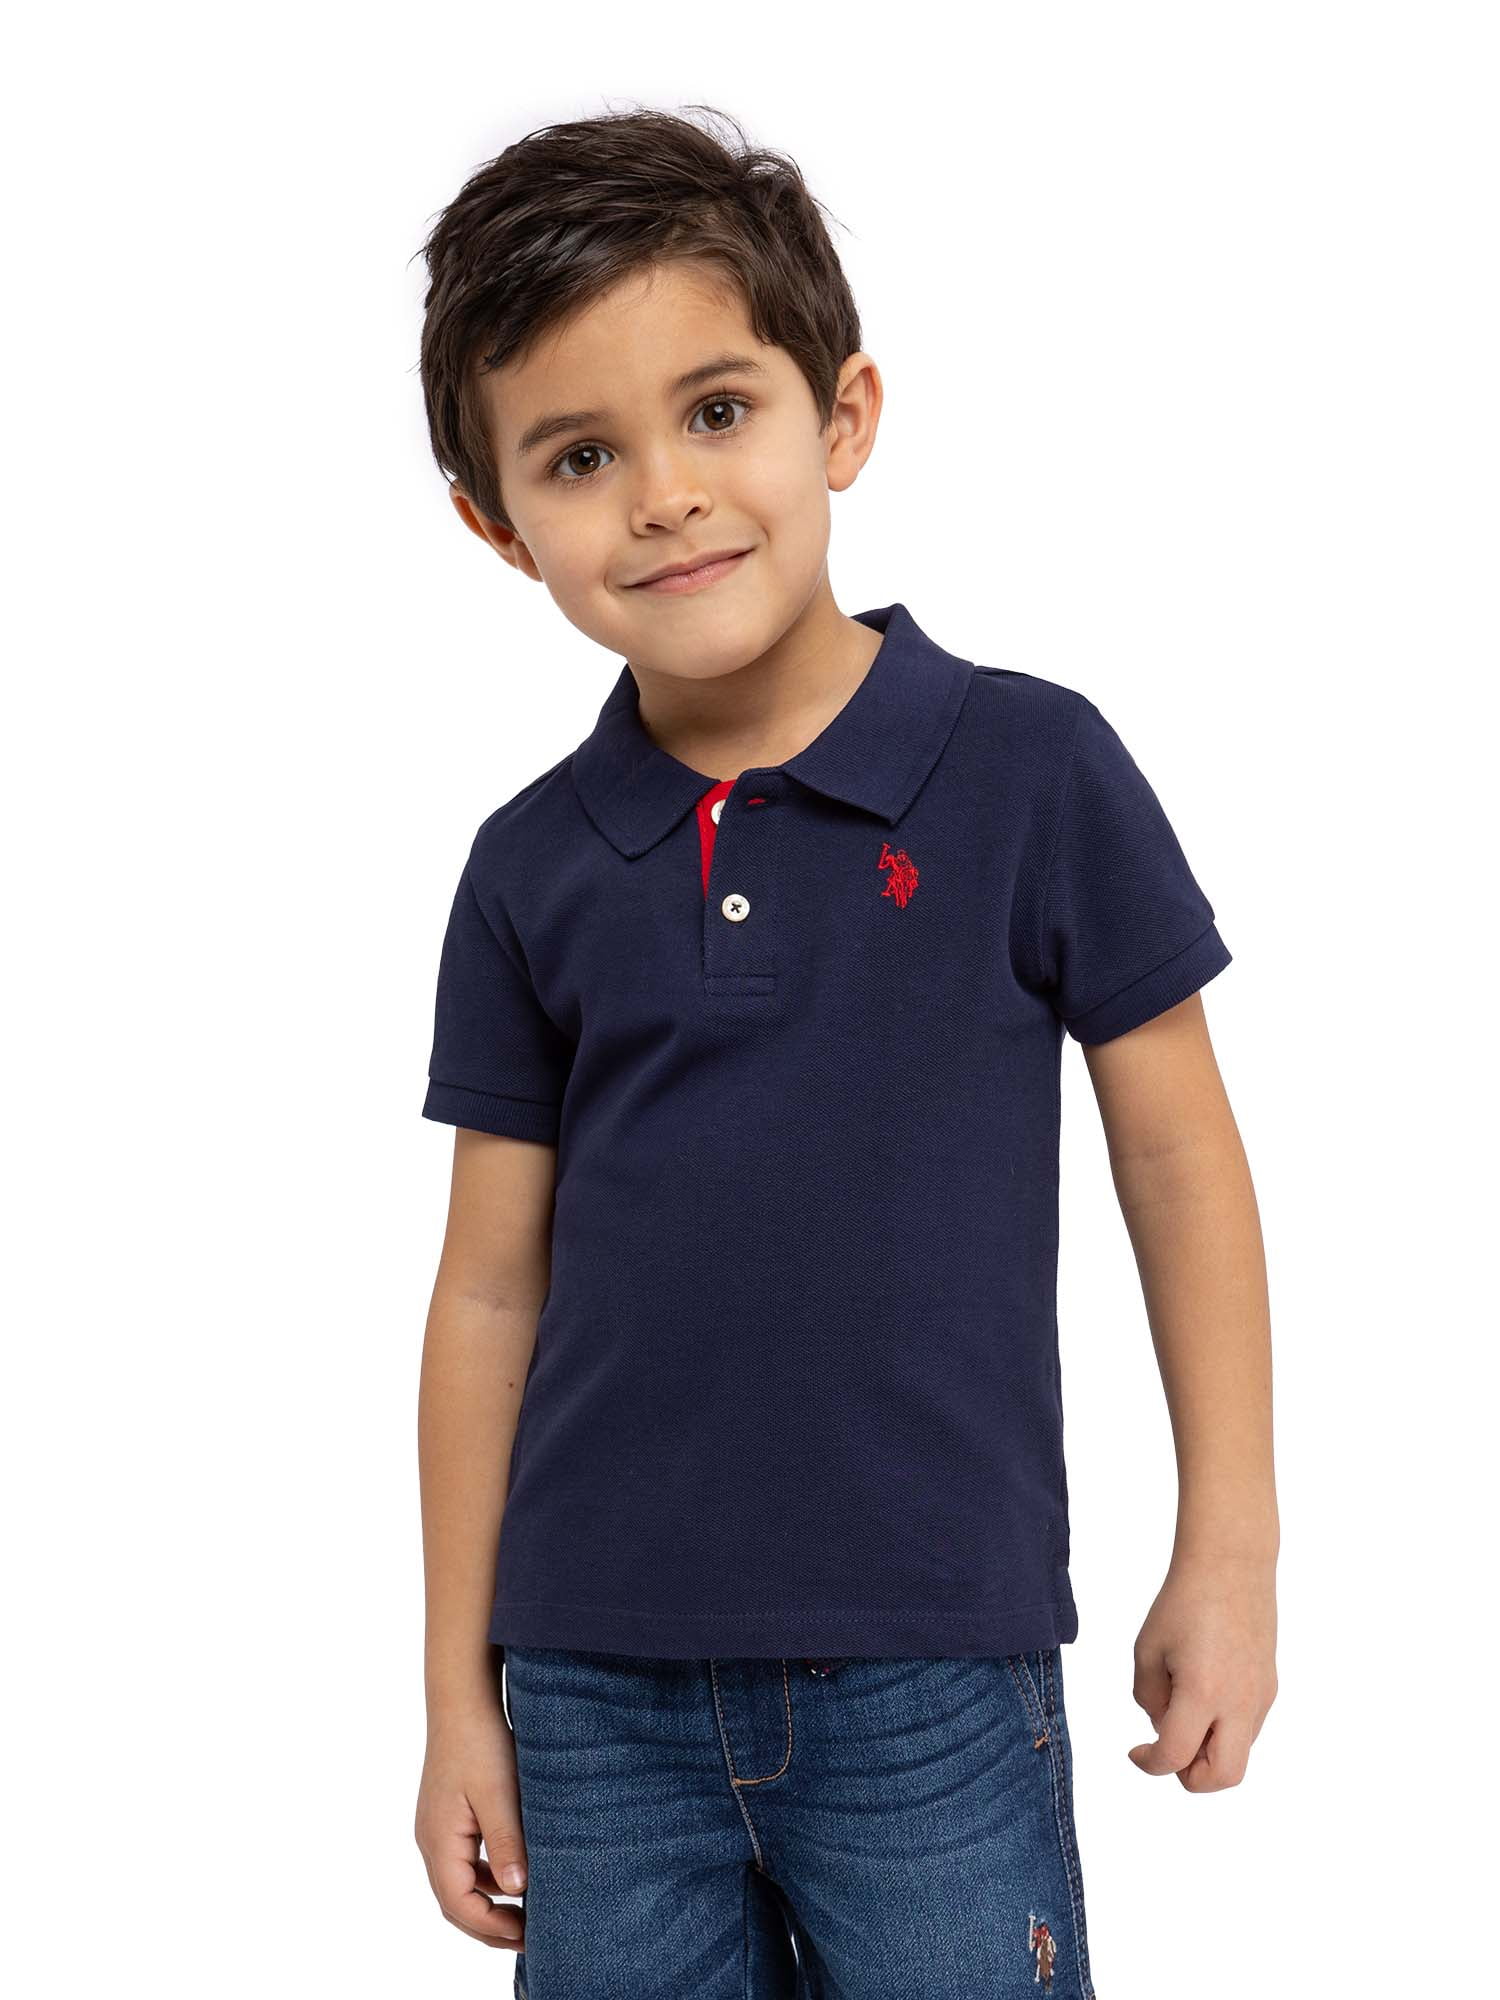 U.S. Polo Assn. Toddler Boys Pique Polo Shirt, Sizes 2T-5T - Walmart.com